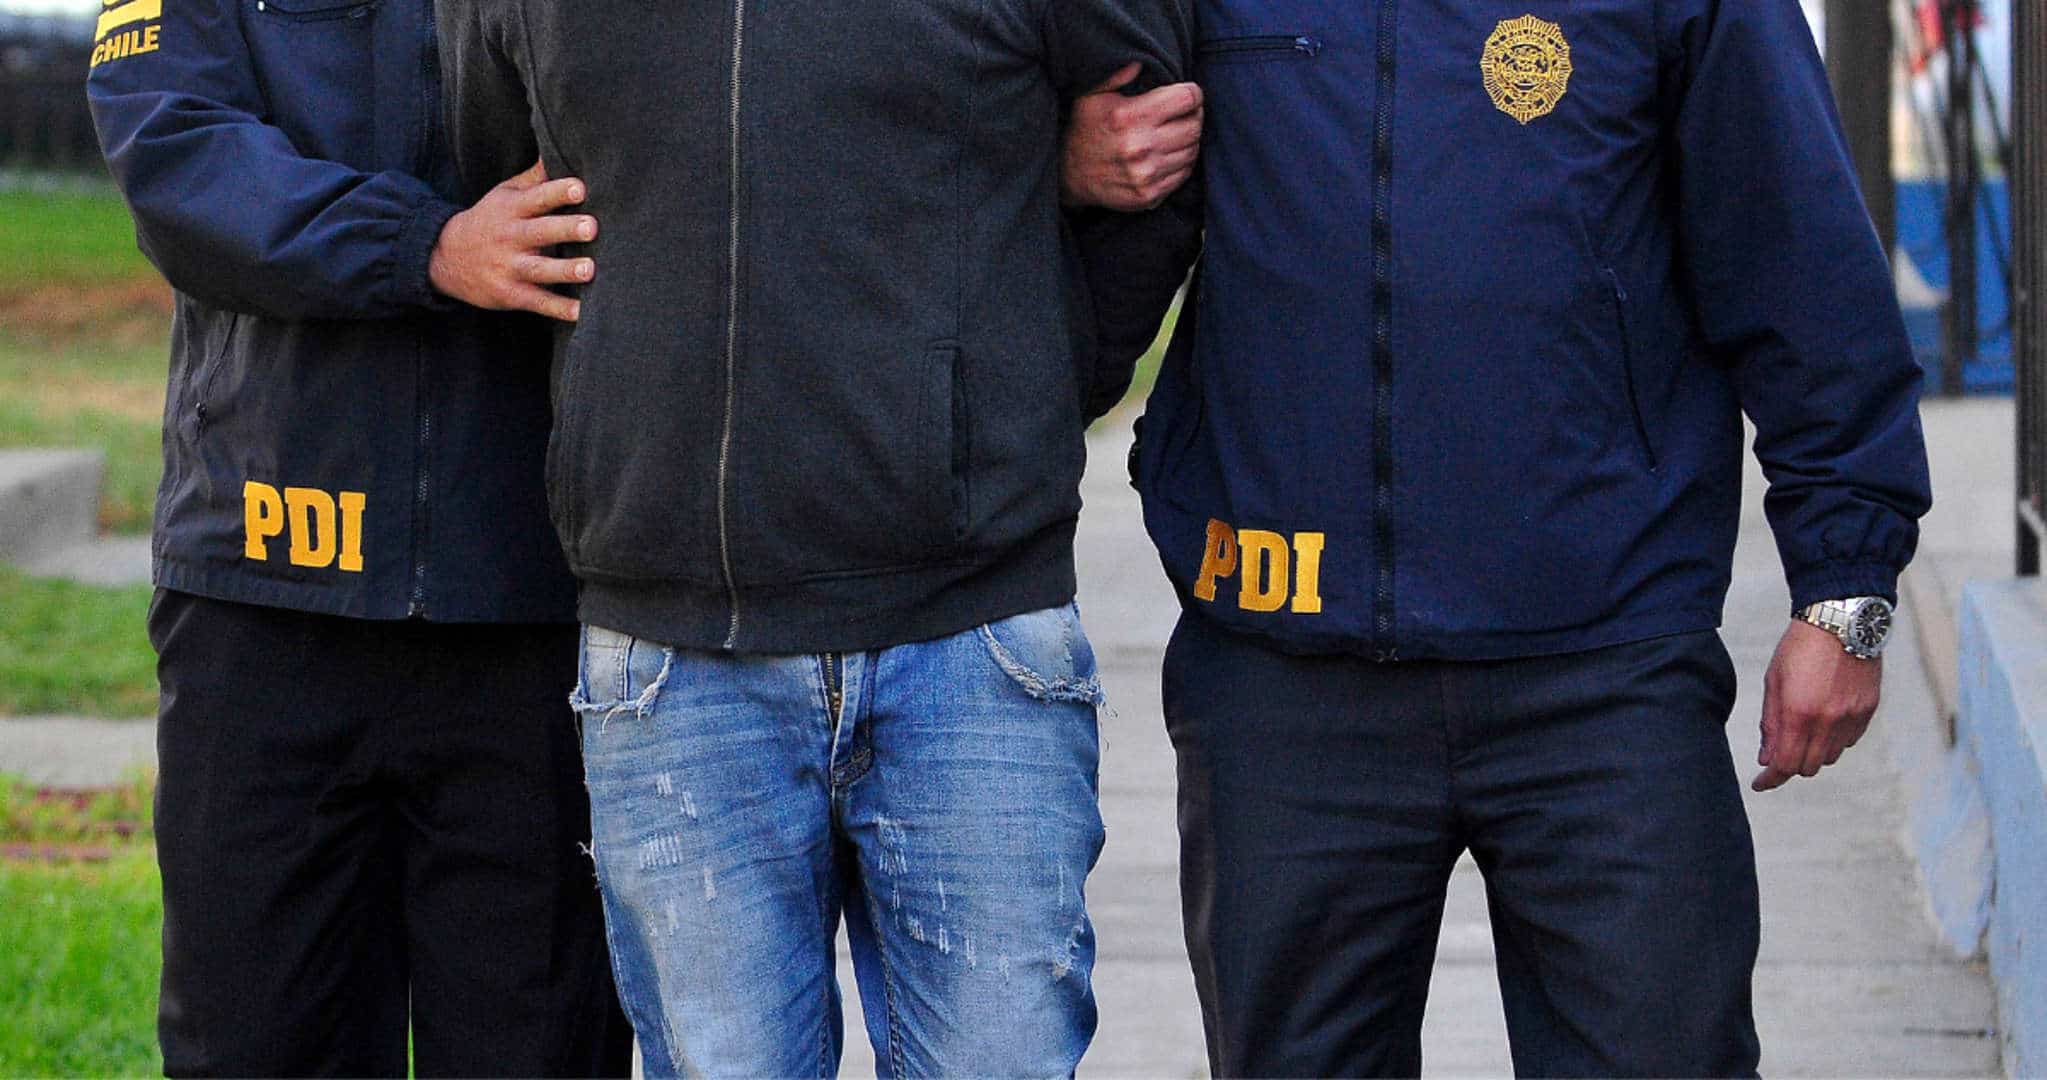 Golpe Contundente al Narcotráfico: PDI Detiene a Extranjero y Confisca Millonario Cargamento de Drogas